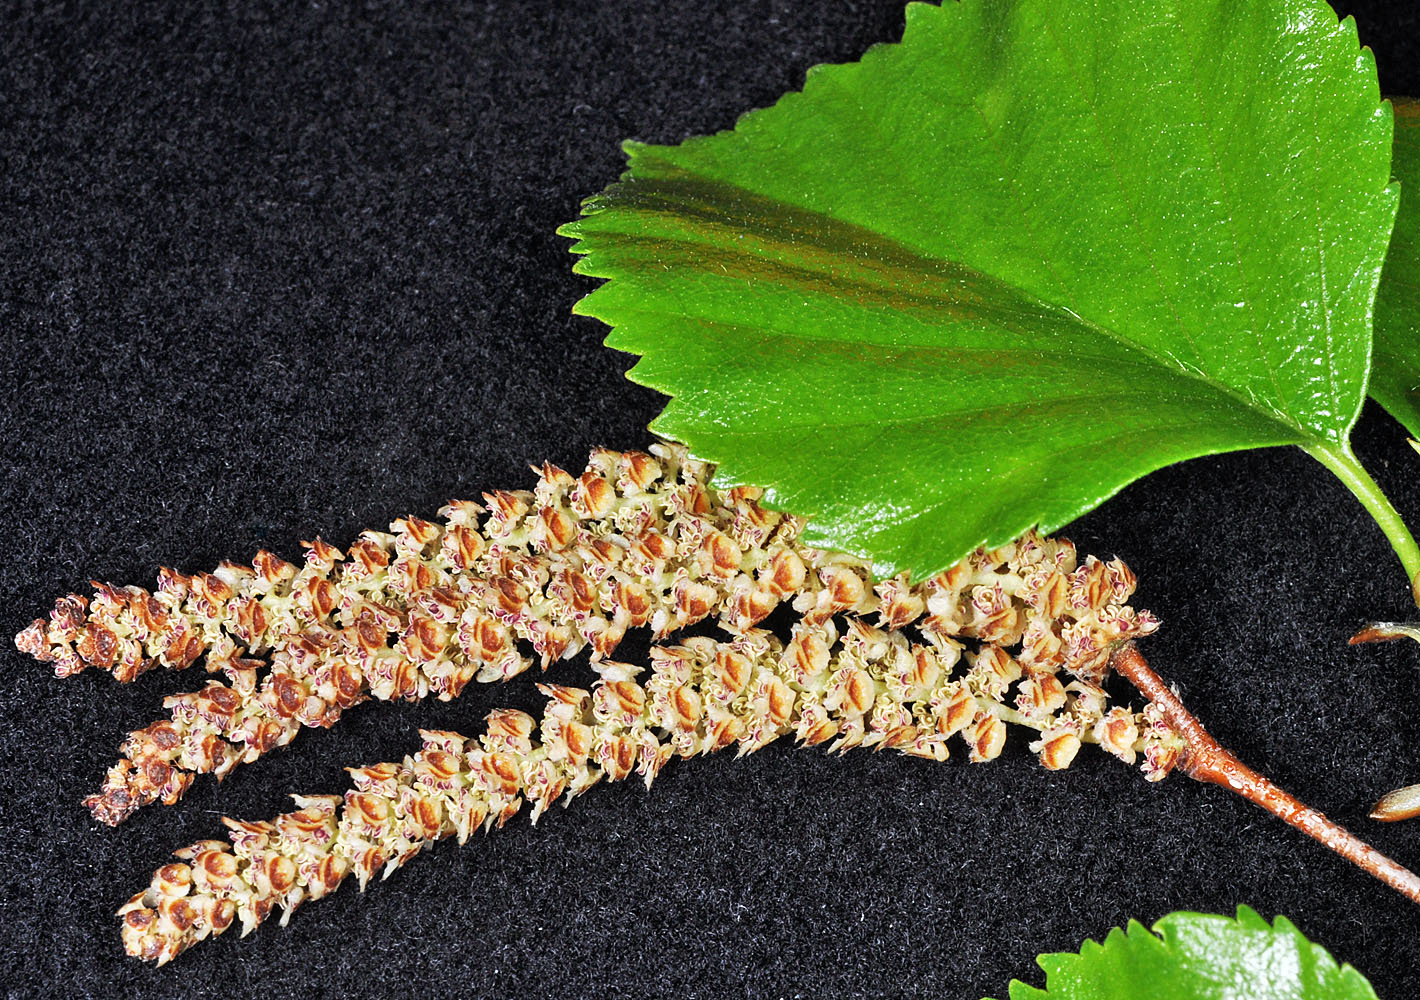 Flora of Eastern Washington Image: Betula occidentalis